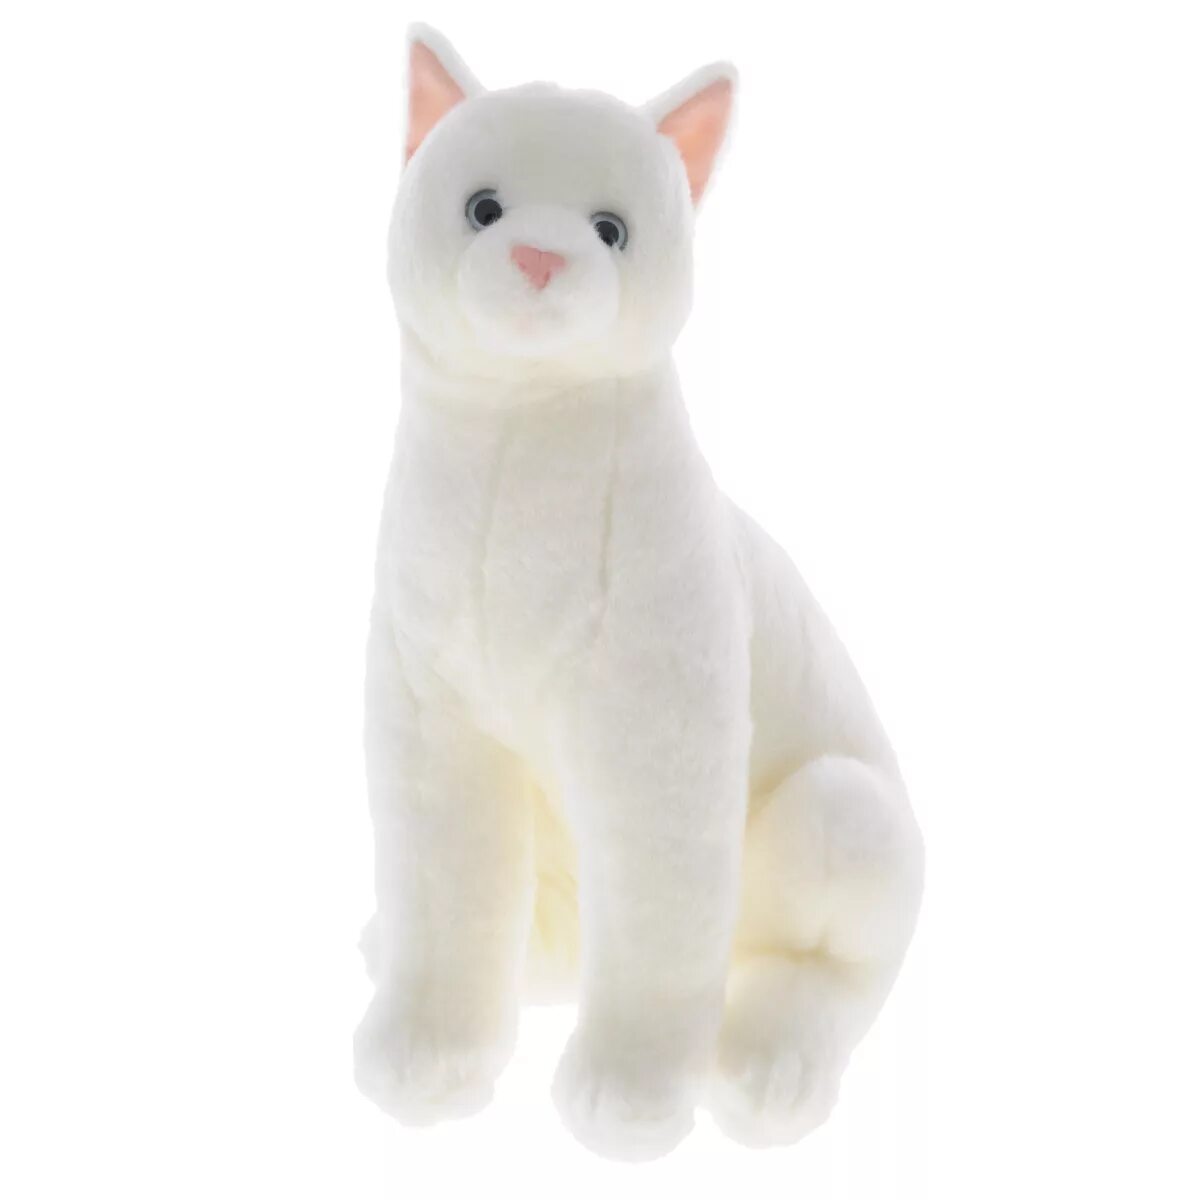 Где купить игрушку кот. Игрушки Gulliver белая кошка. Кот белый белый Gulliver. Мягкая игрушка котик белый. Мягкая игрушка кошка белая.